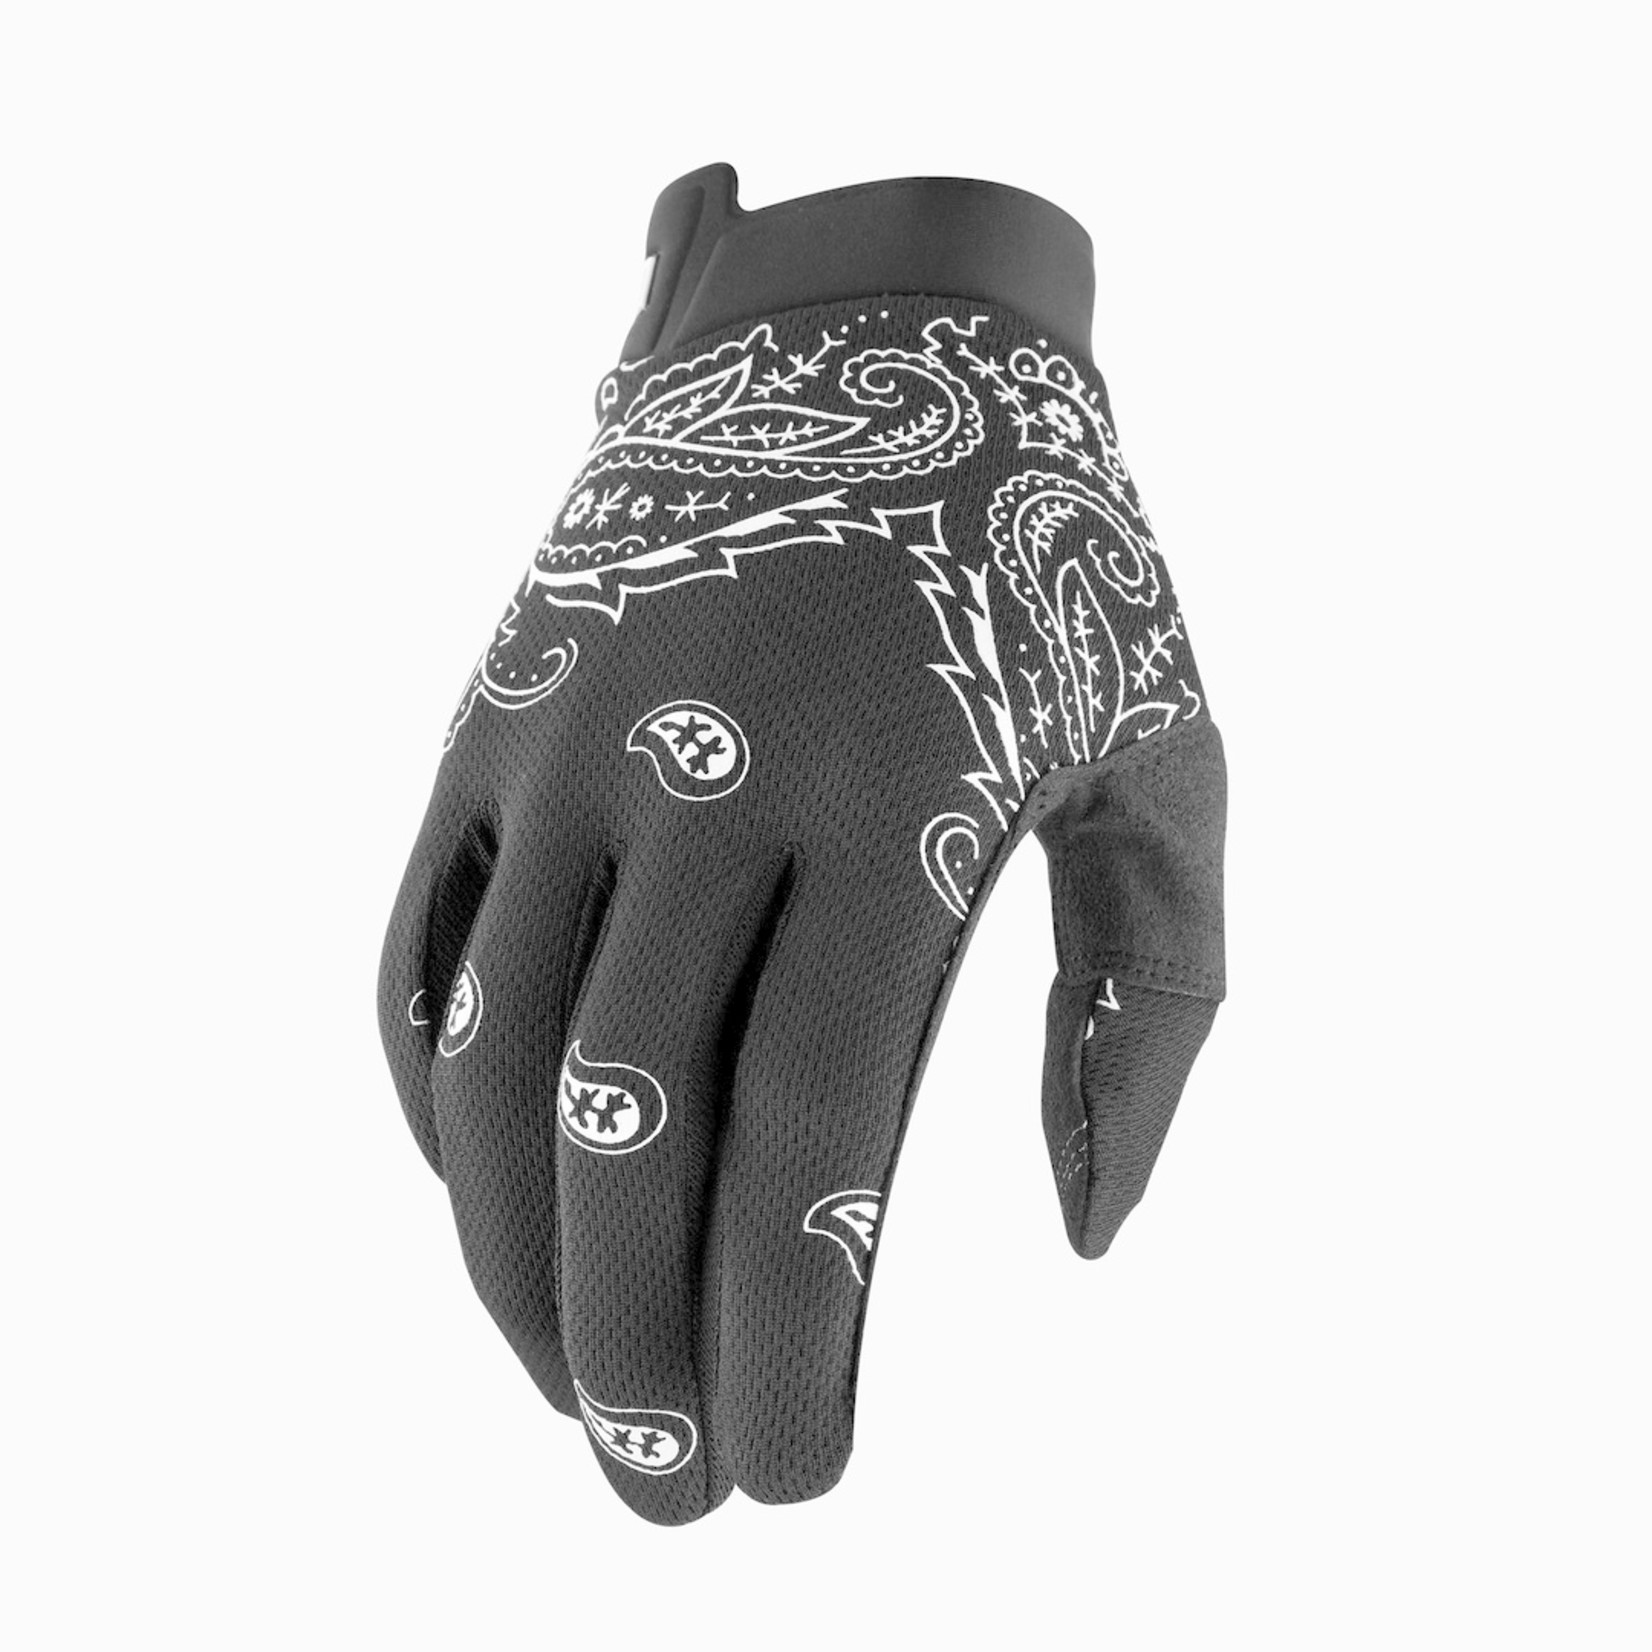 FE sports 100% Itrack Cycling Gloves - Bandana